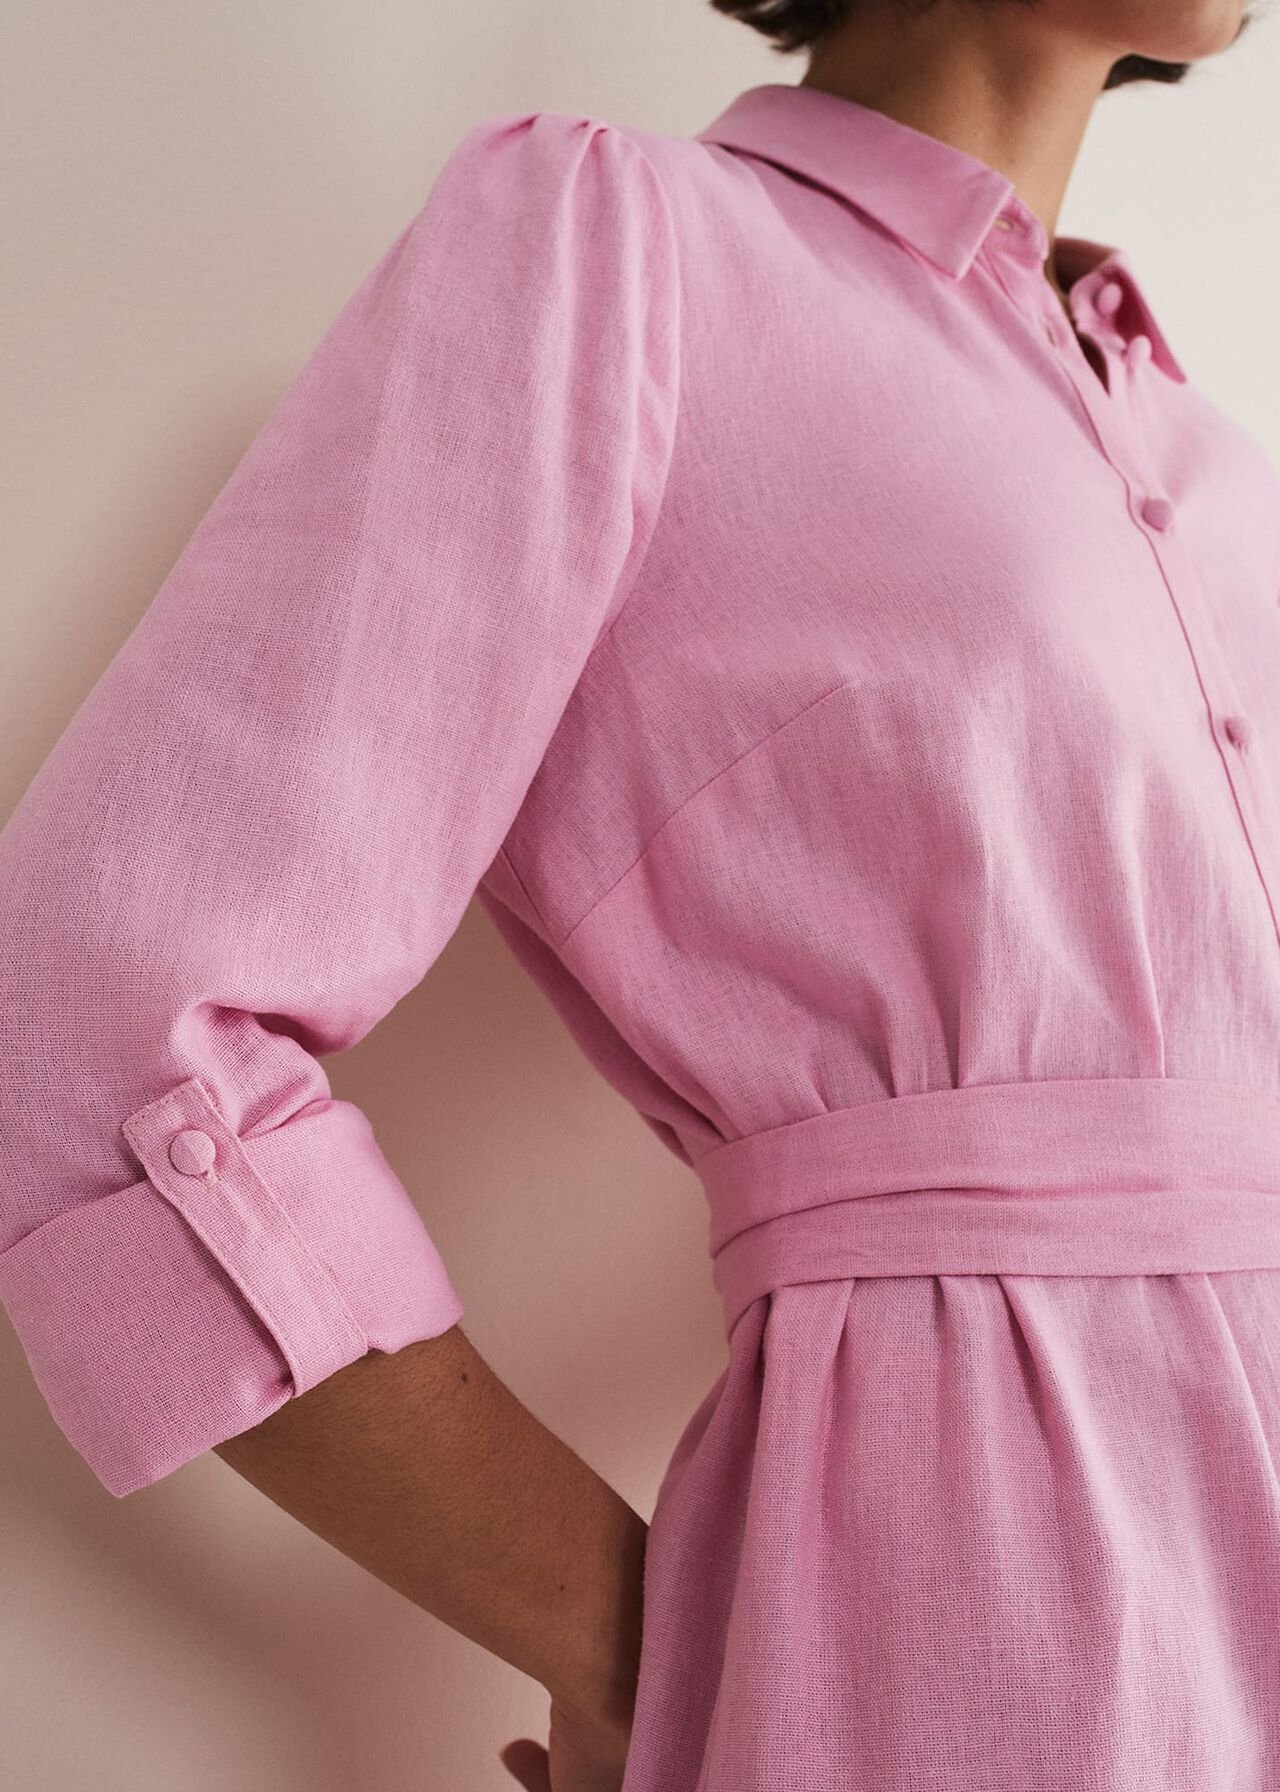 Rosalina Pink Linen Shirt Dress